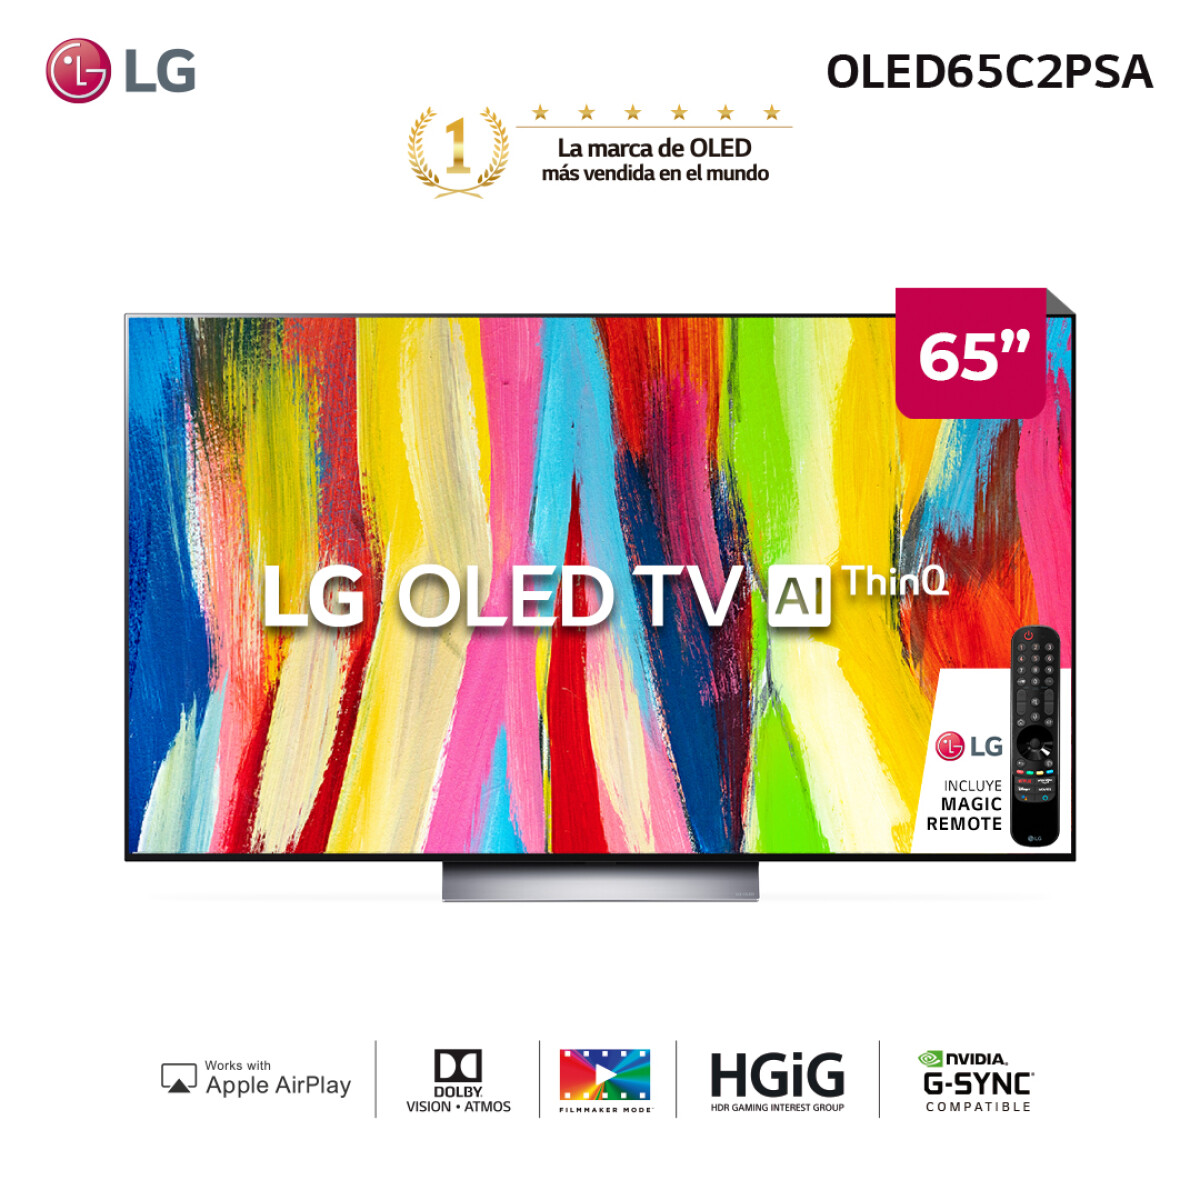 LG OLED 4K 65" OLED65C2 